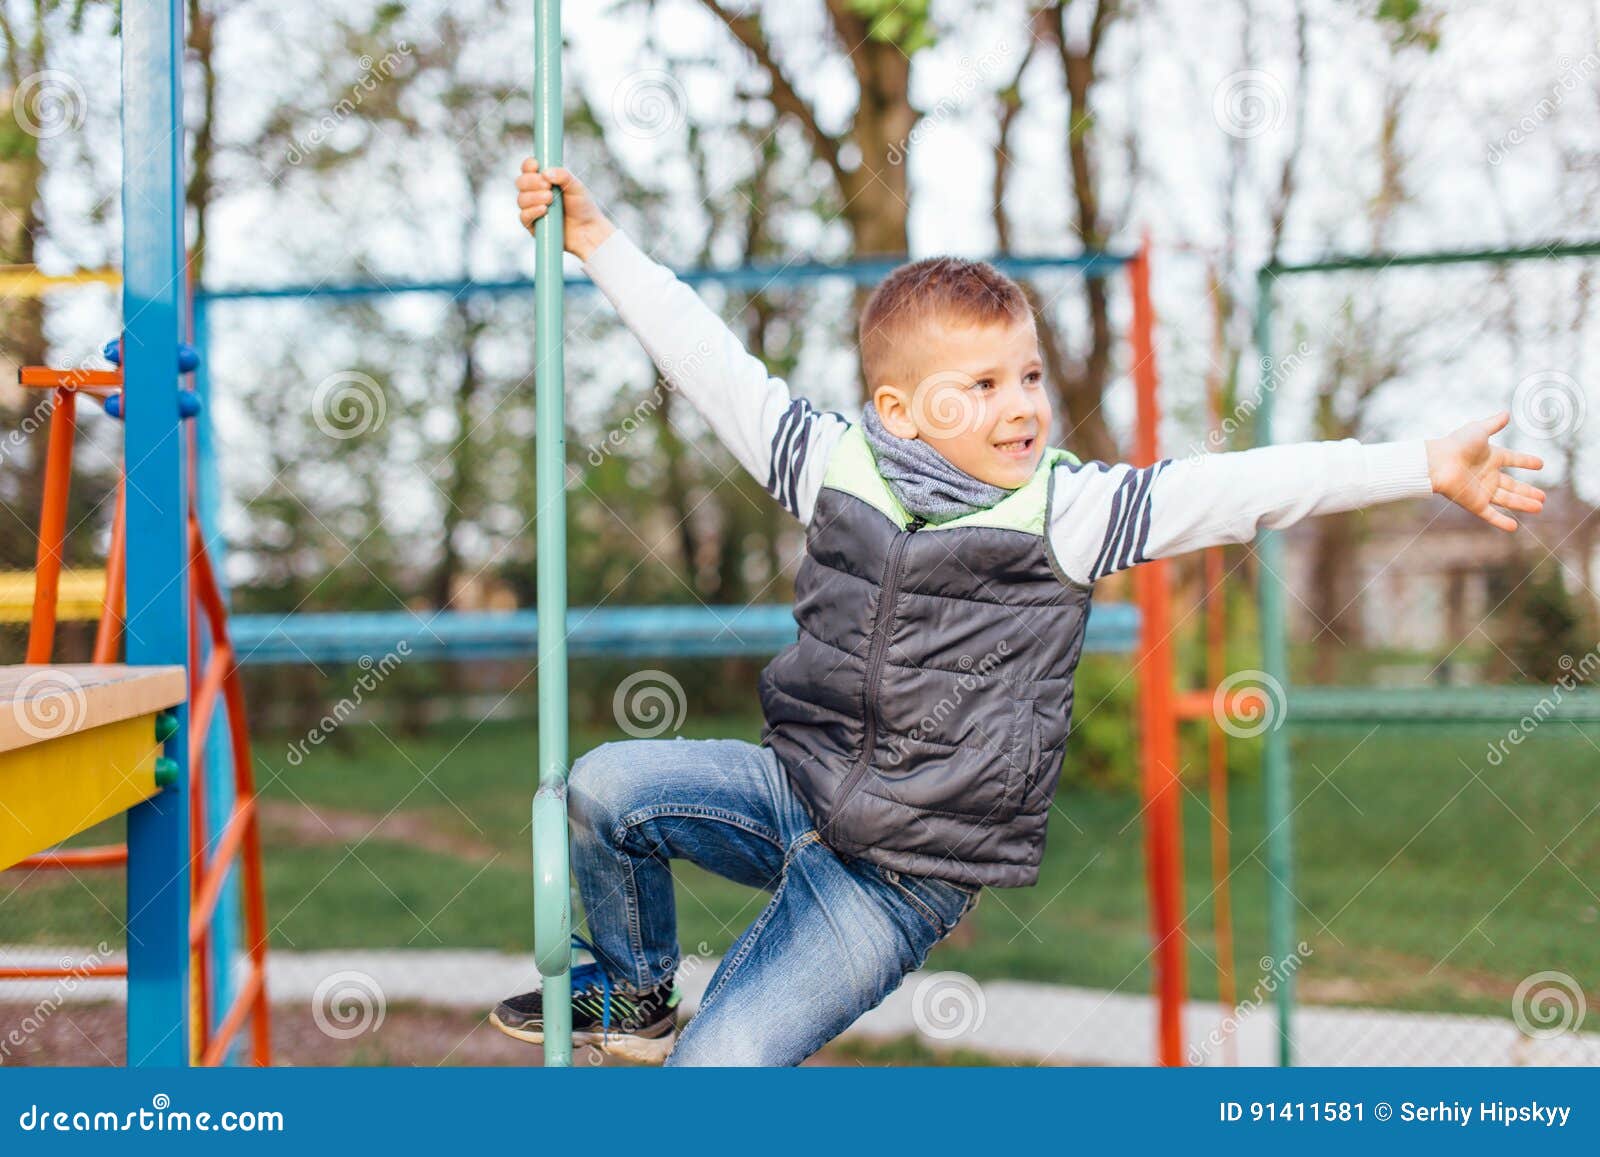 Мальчик на спортивной площадке. Мальчик на площадке. Маленький мальчик на детской площадке. Мальчик играет на площадке.